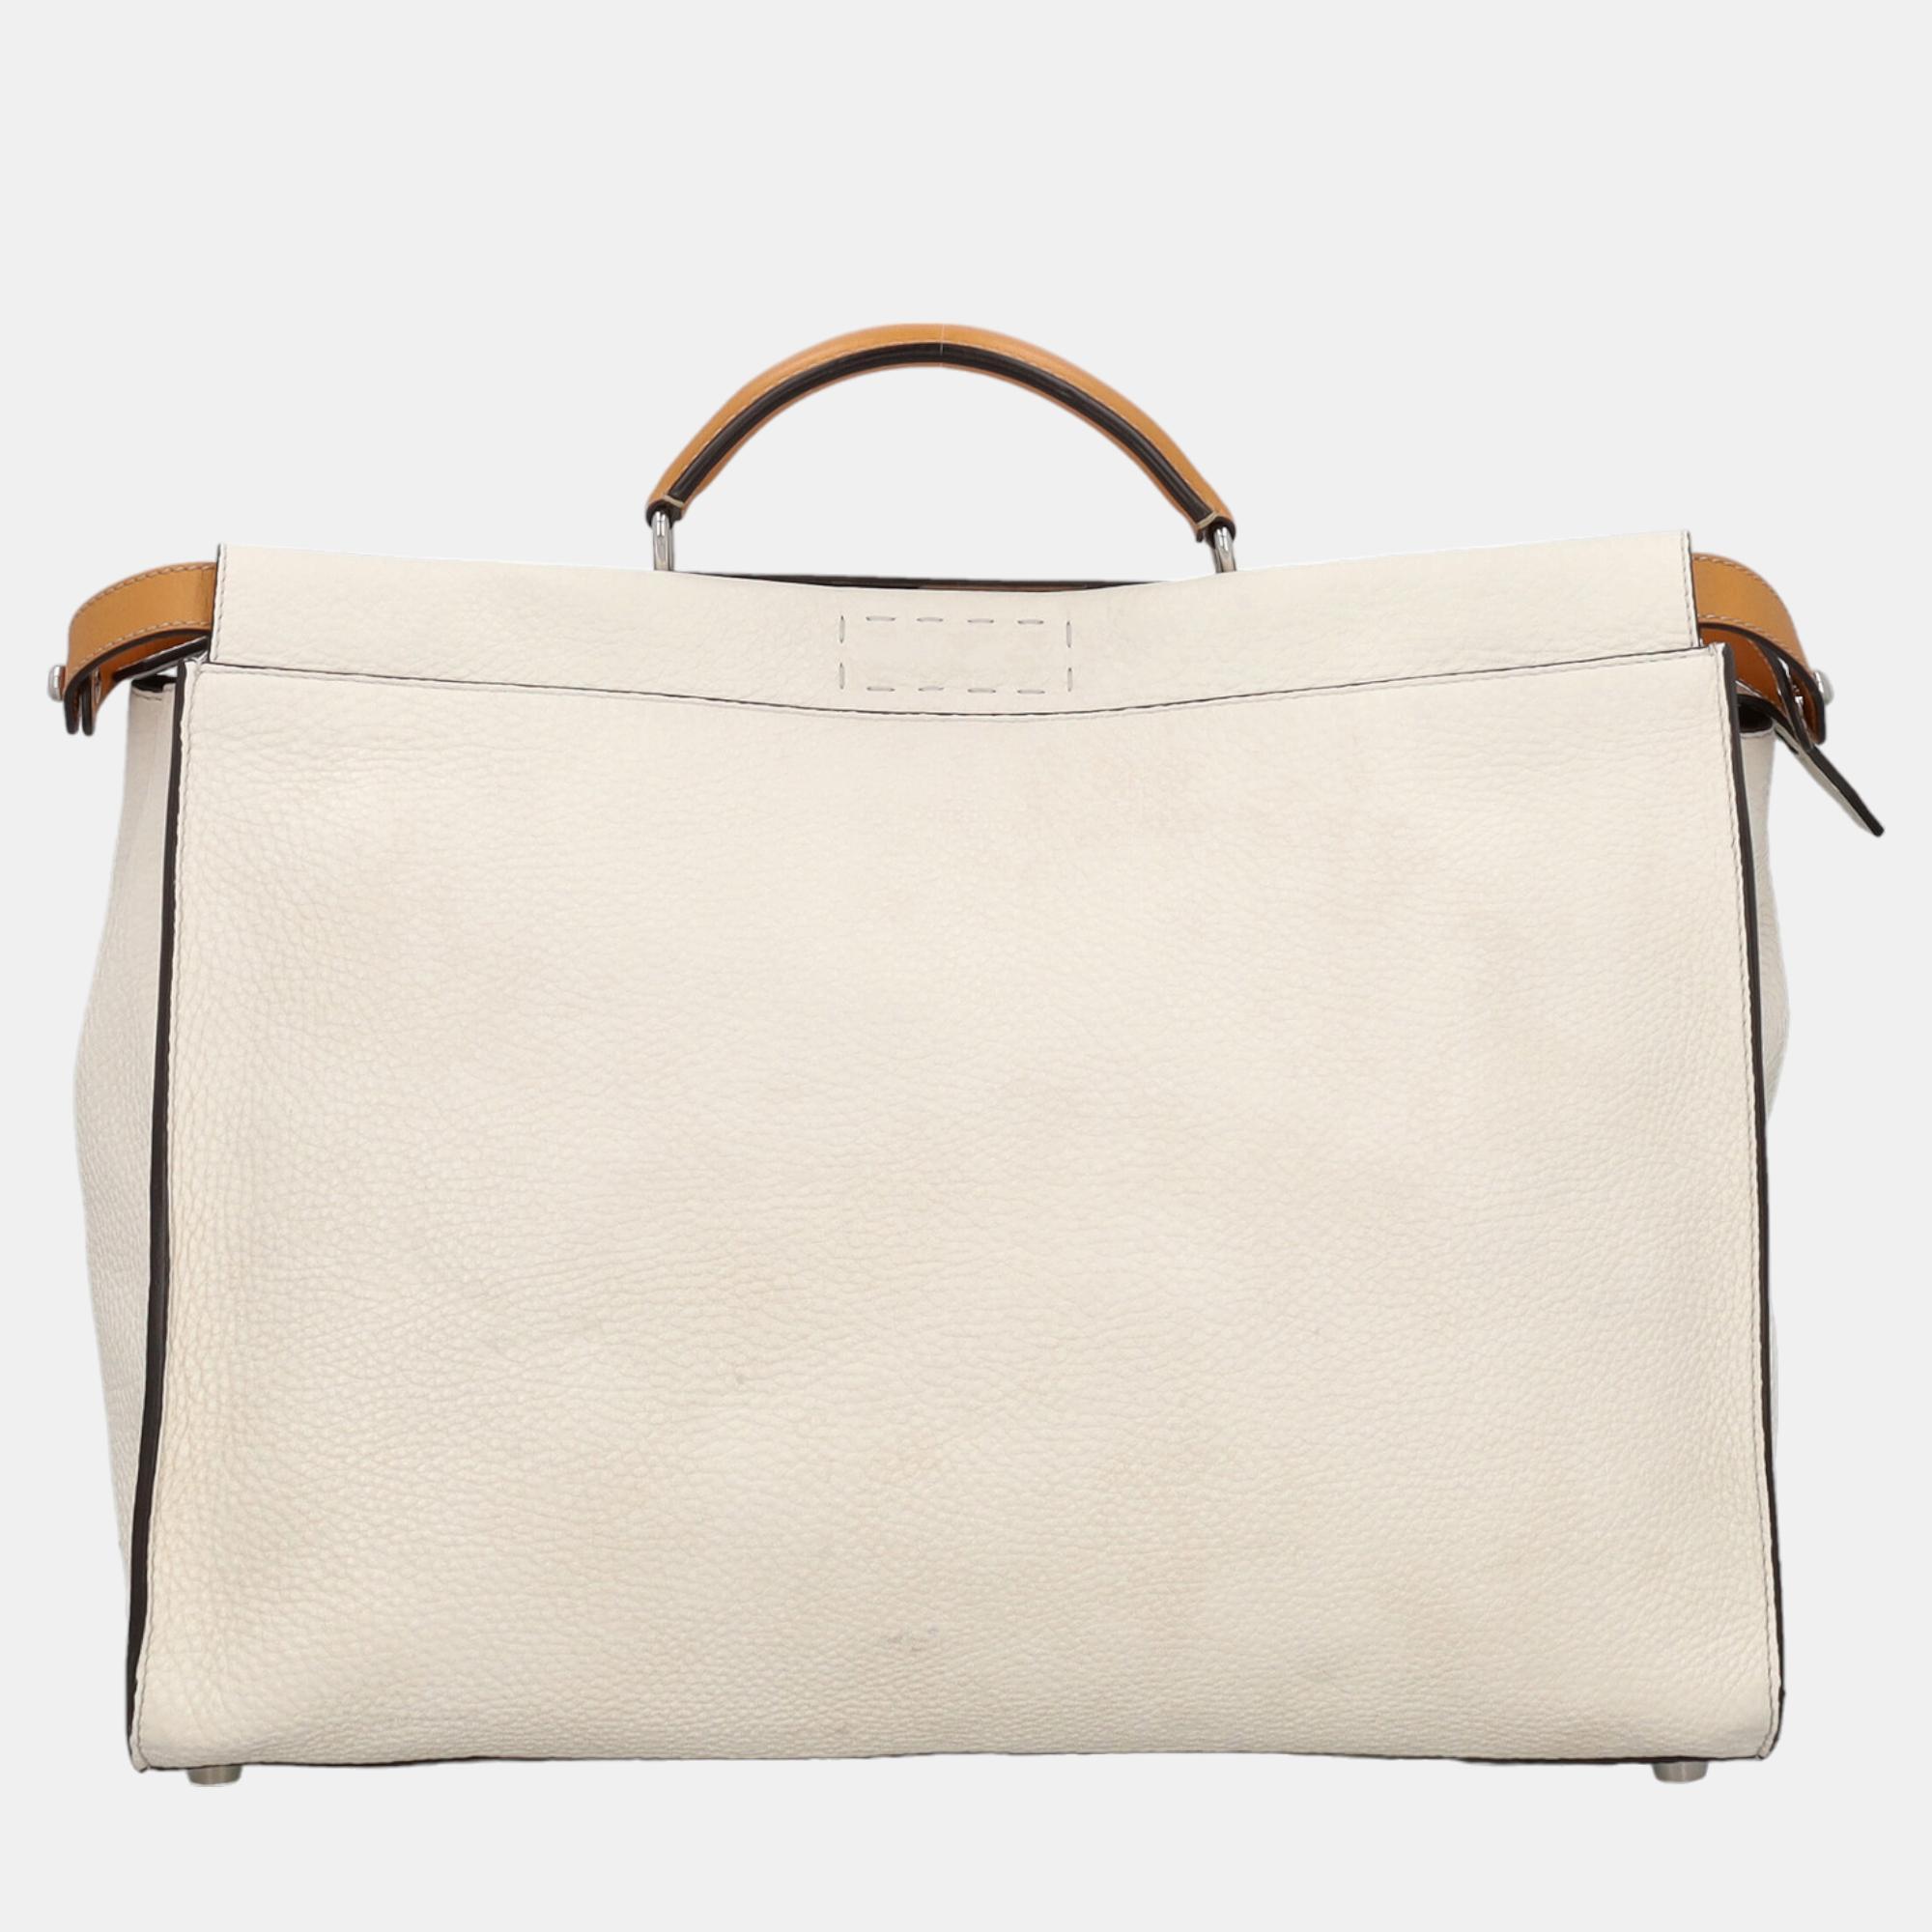 Fendi Peekaboo -  Women's Leather Tote Bag - White - One Size